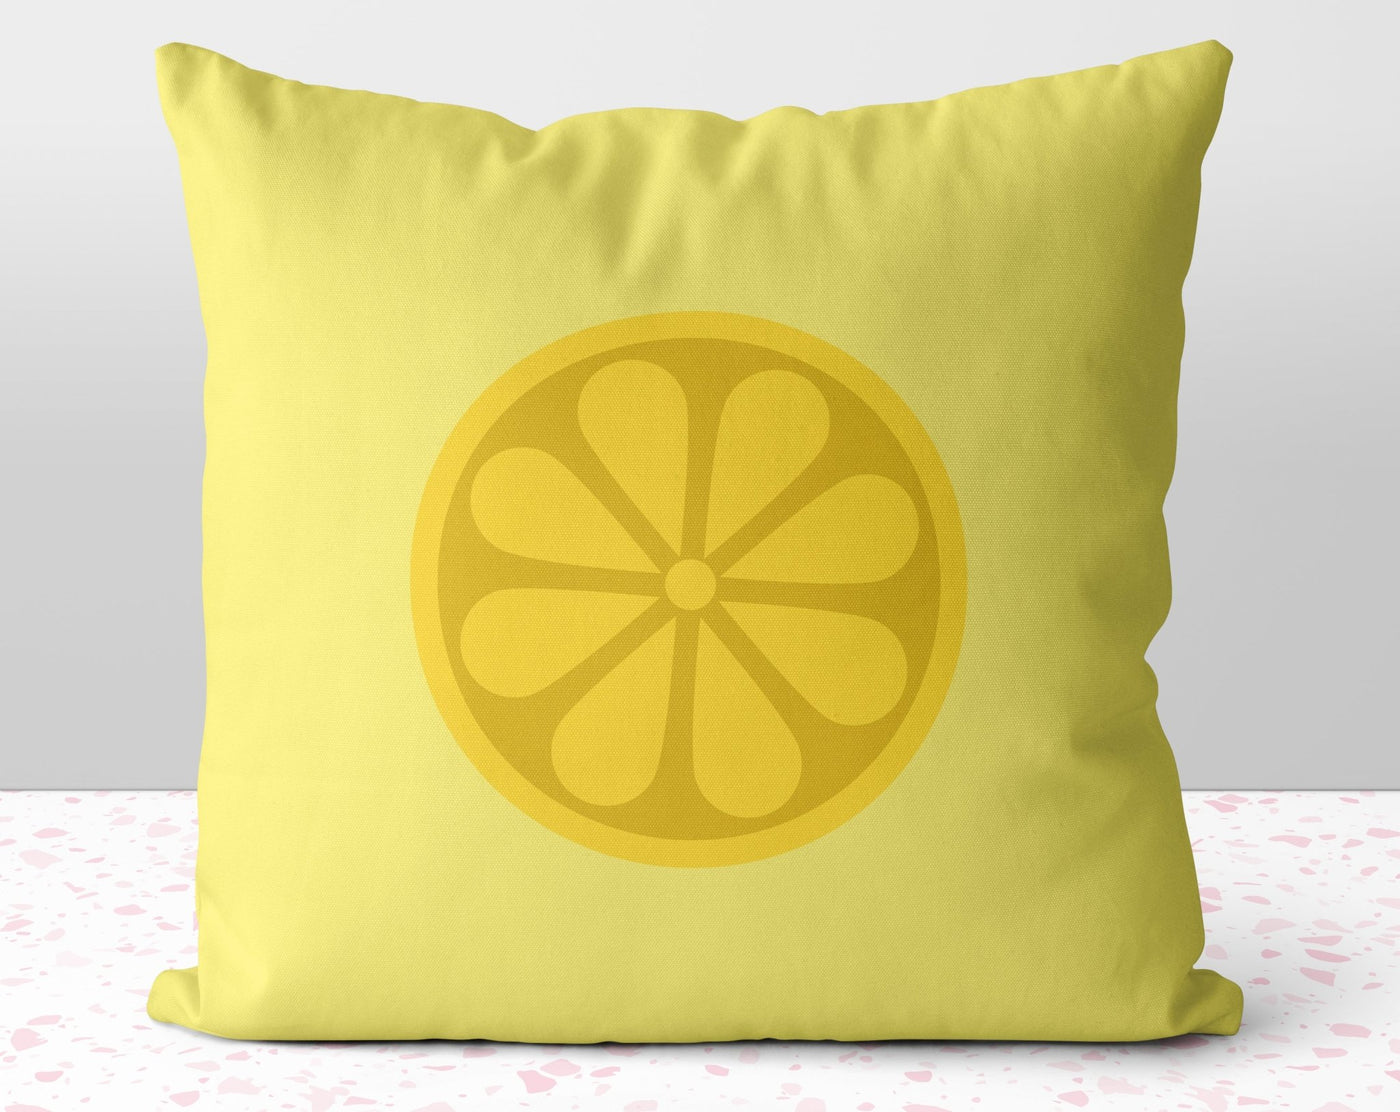 The Mellow Yellow Lemon Square Pillow Cover Throw - Cush Potato Pillows